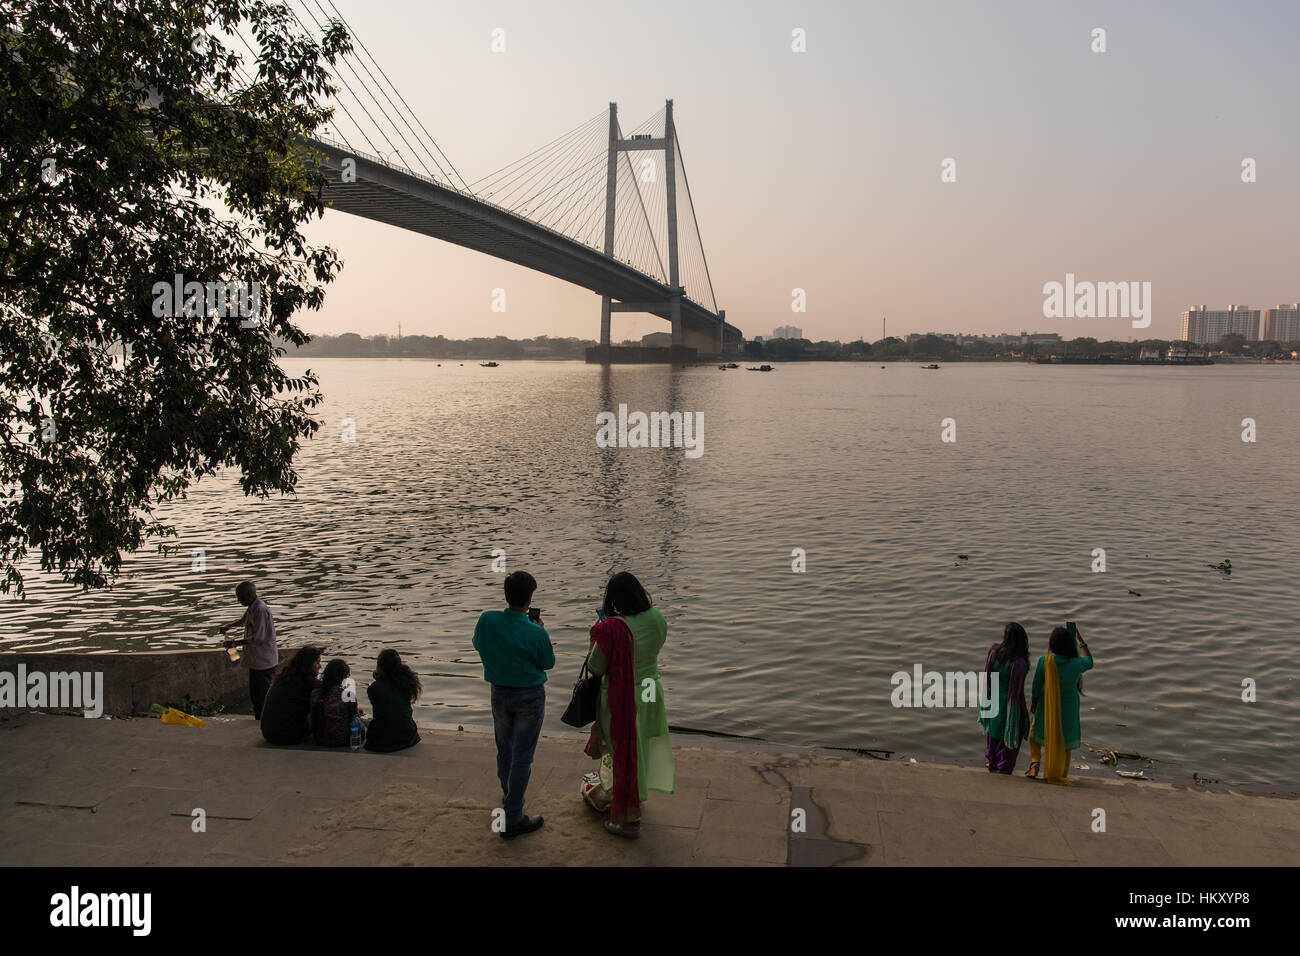 Die Hooghly Brücke über den Fluss Hooghly in Kolkata (Kalkutta), West Bengal, Indien. Stockfoto